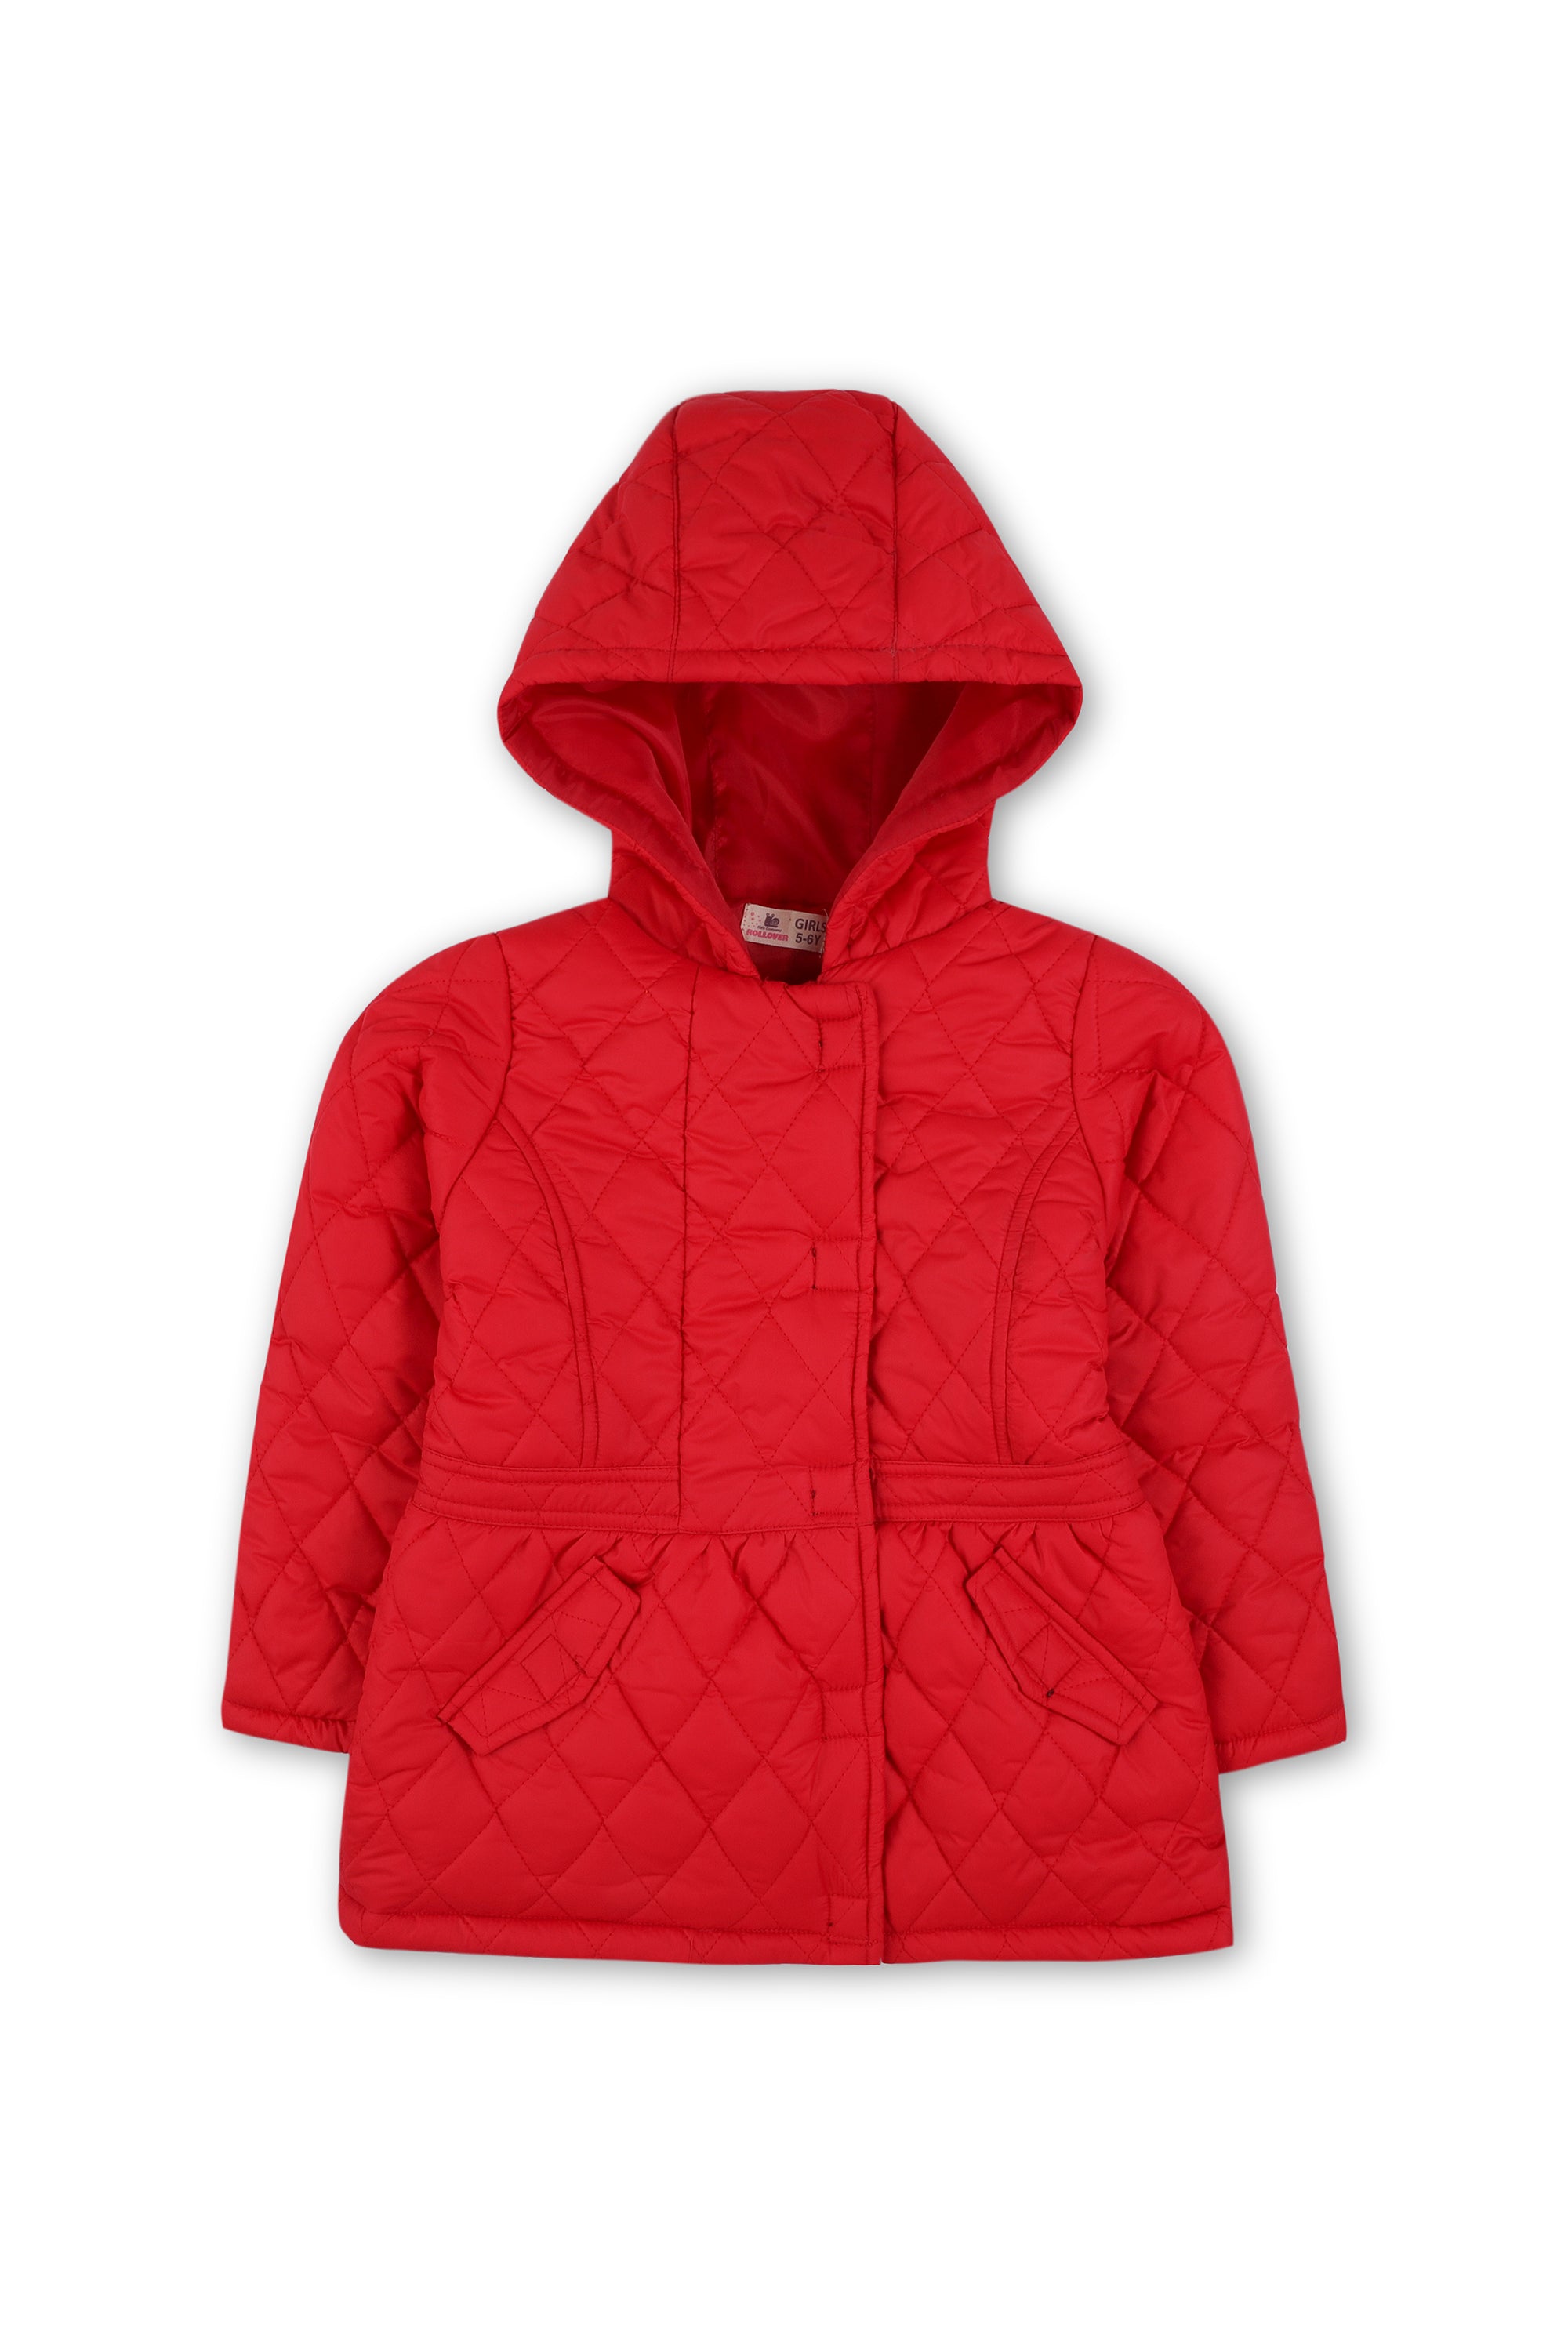 Girls Red Jacket